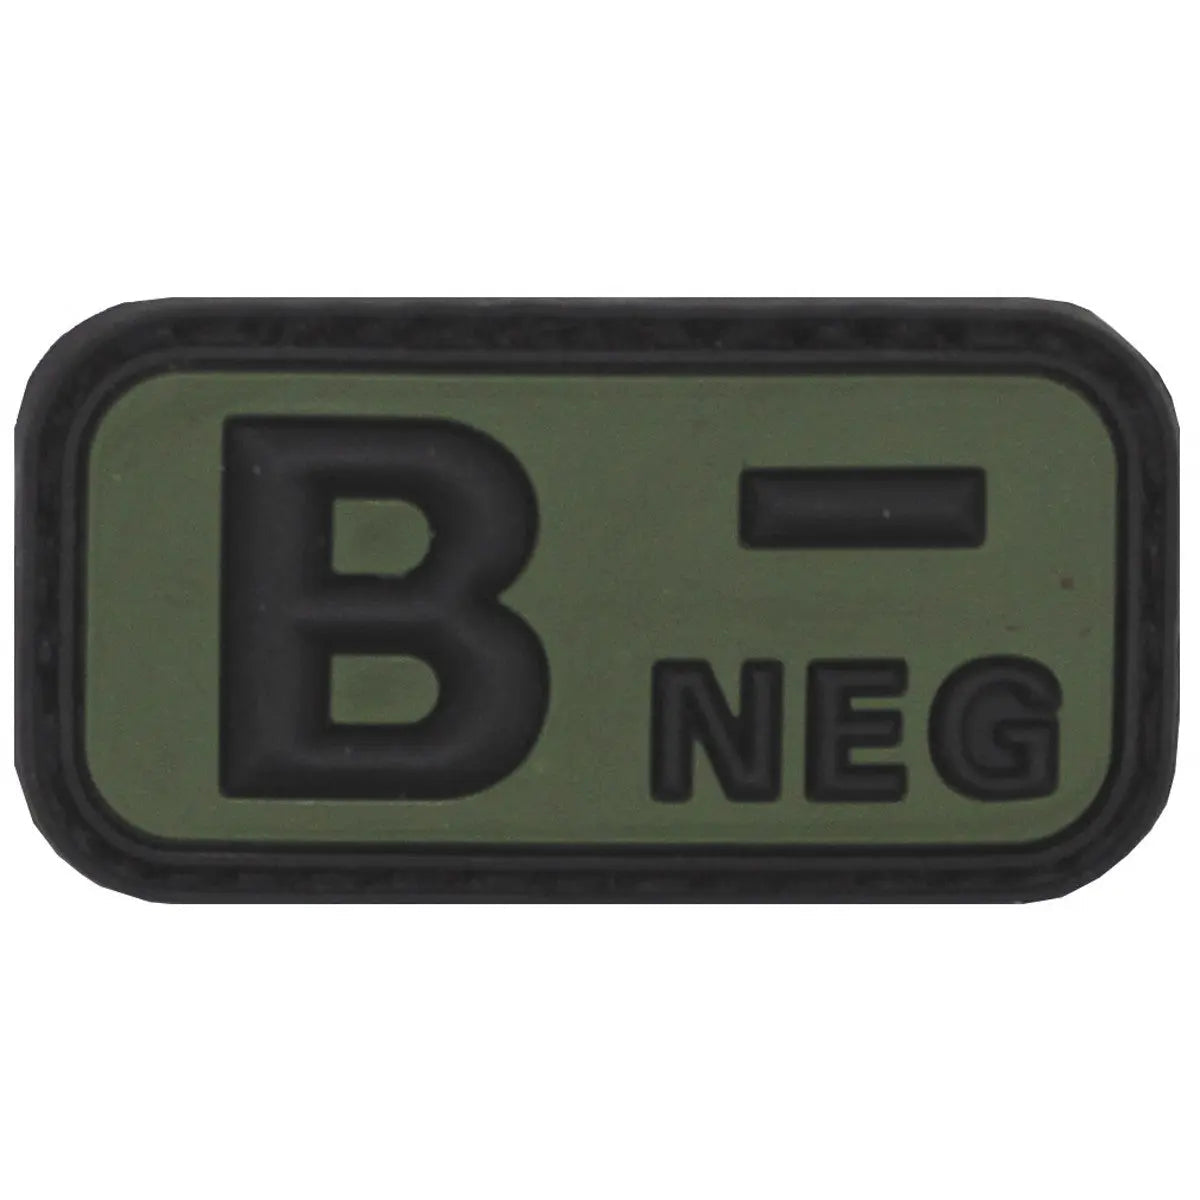 Velcro Patch, black-OD green, blood group "B NEG", 3D